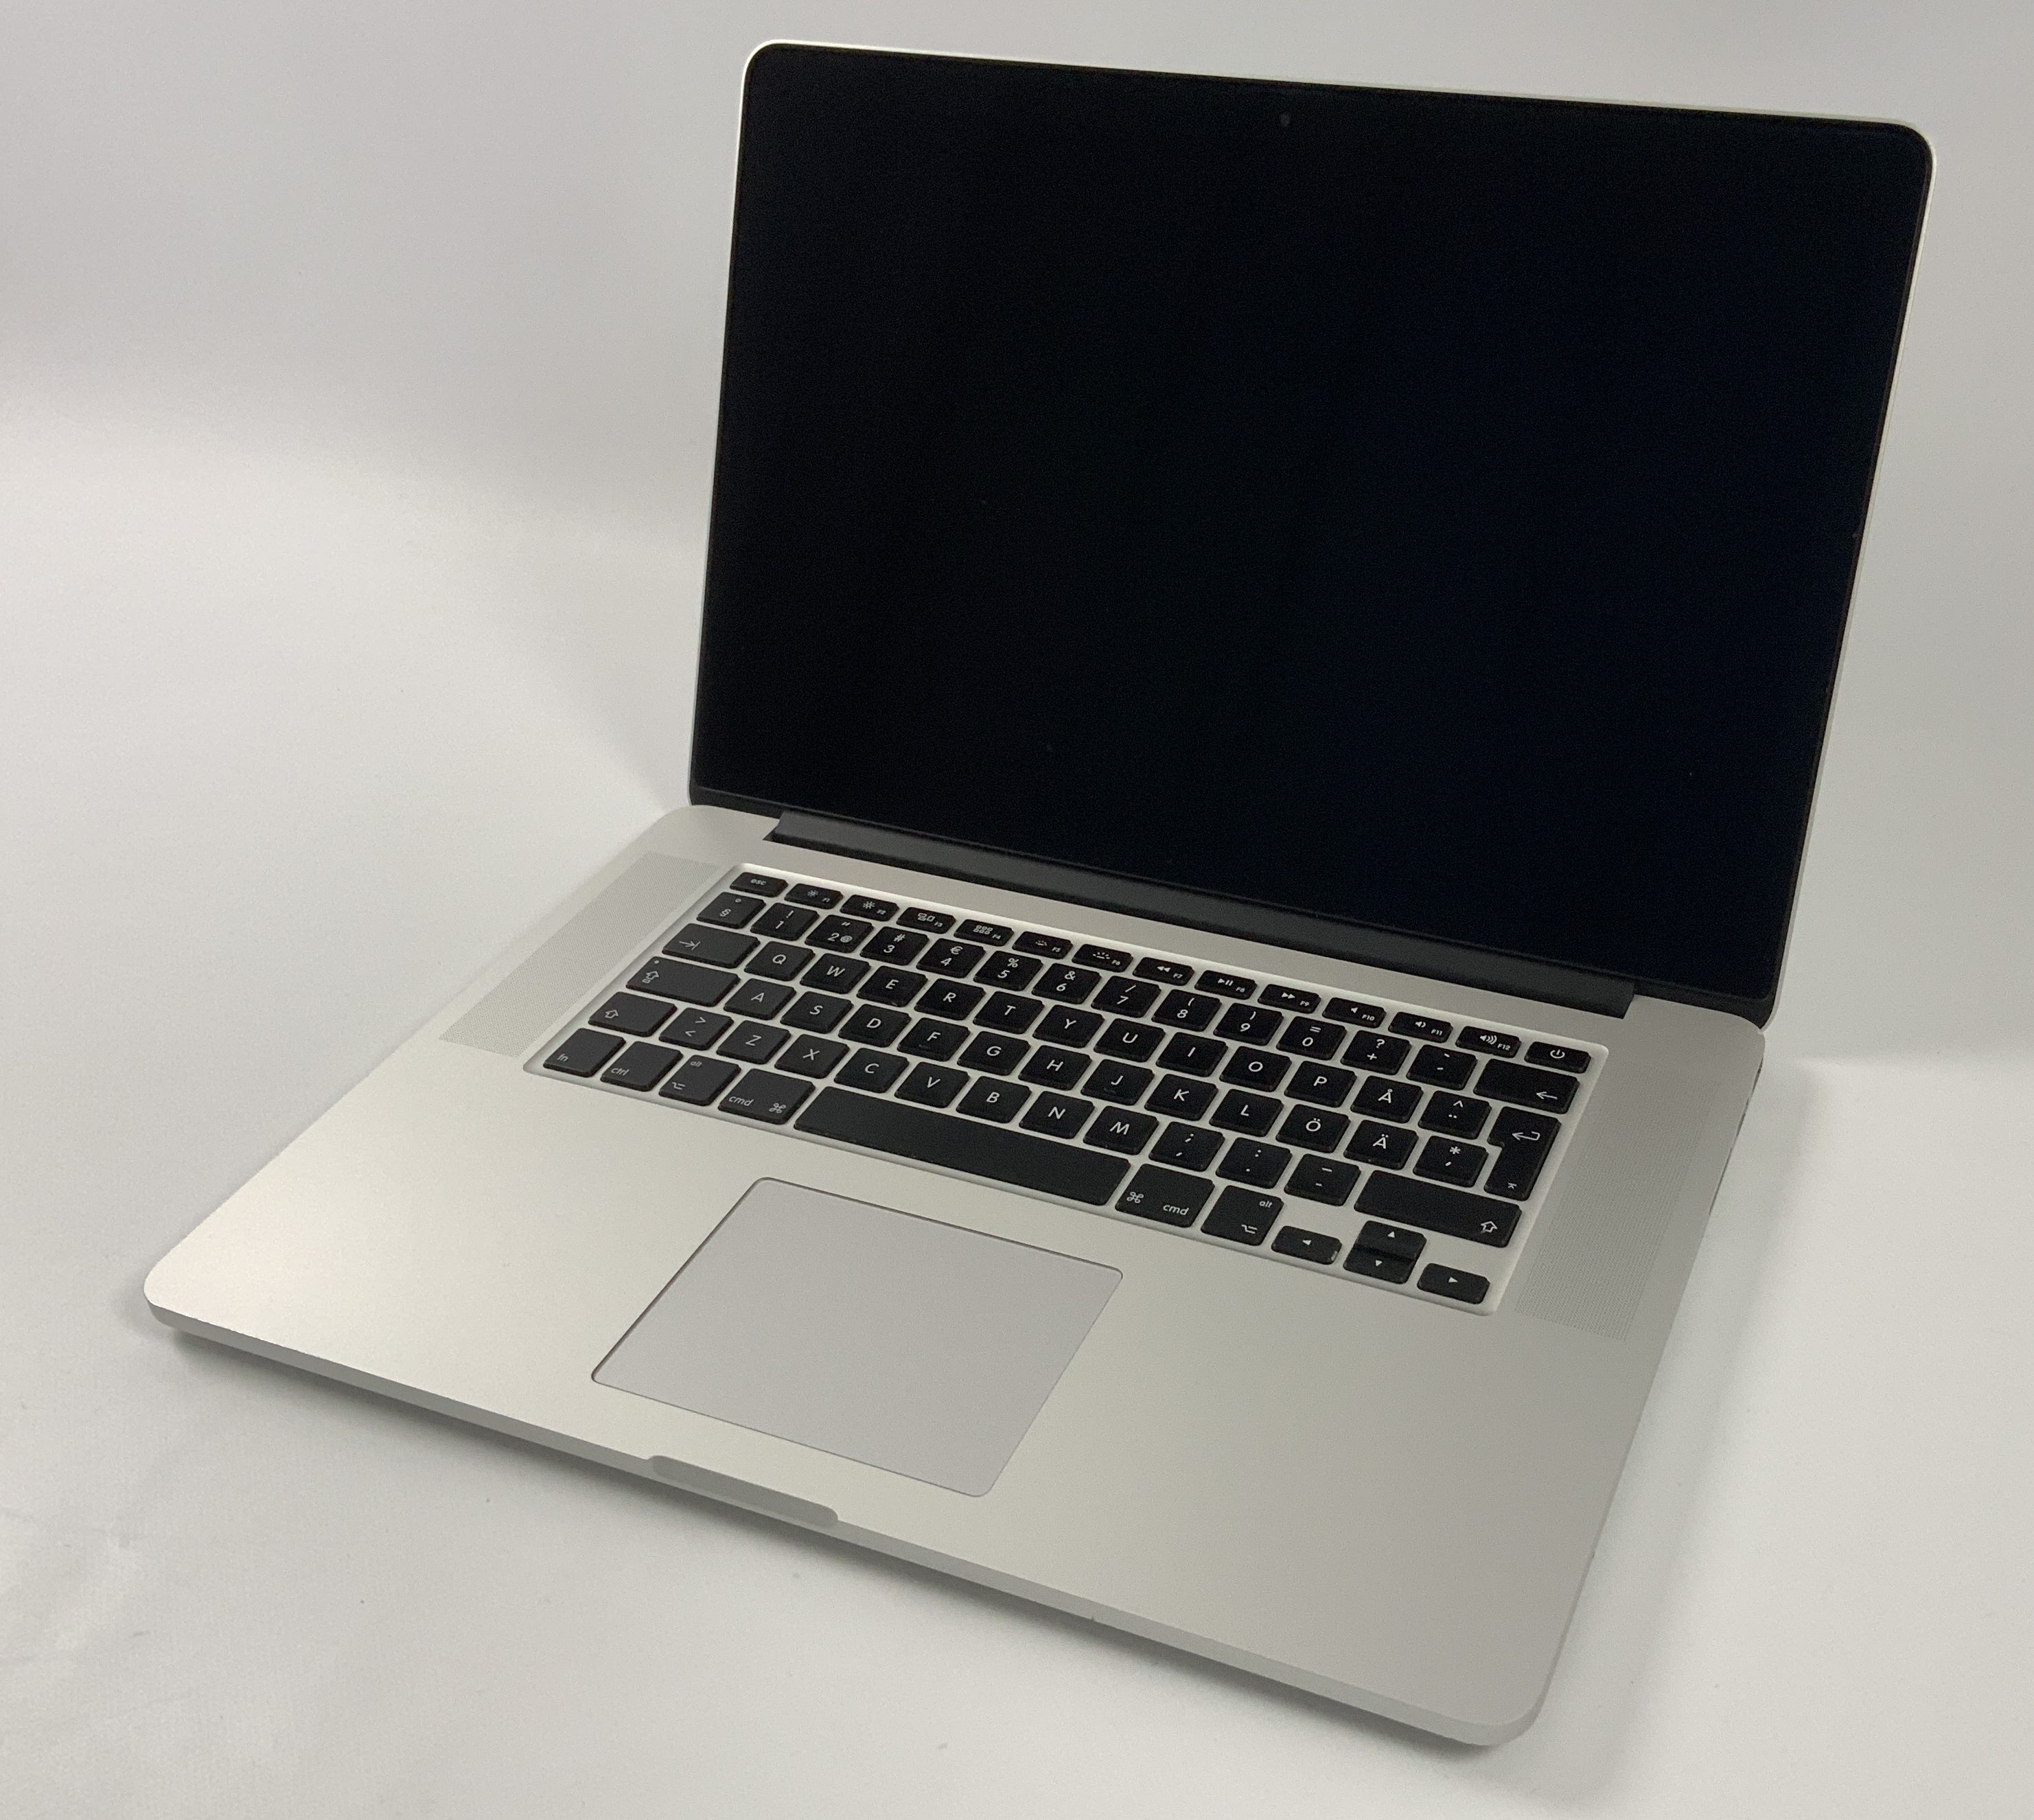 MacBook Pro Retina 15" Mid 2015 (Intel Quad-Core i7 2.5 GHz 16 GB RAM 512 GB SSD), Intel Quad-Core i7 2.5 GHz, 16 GB RAM, 512 GB SSD, Kuva 1